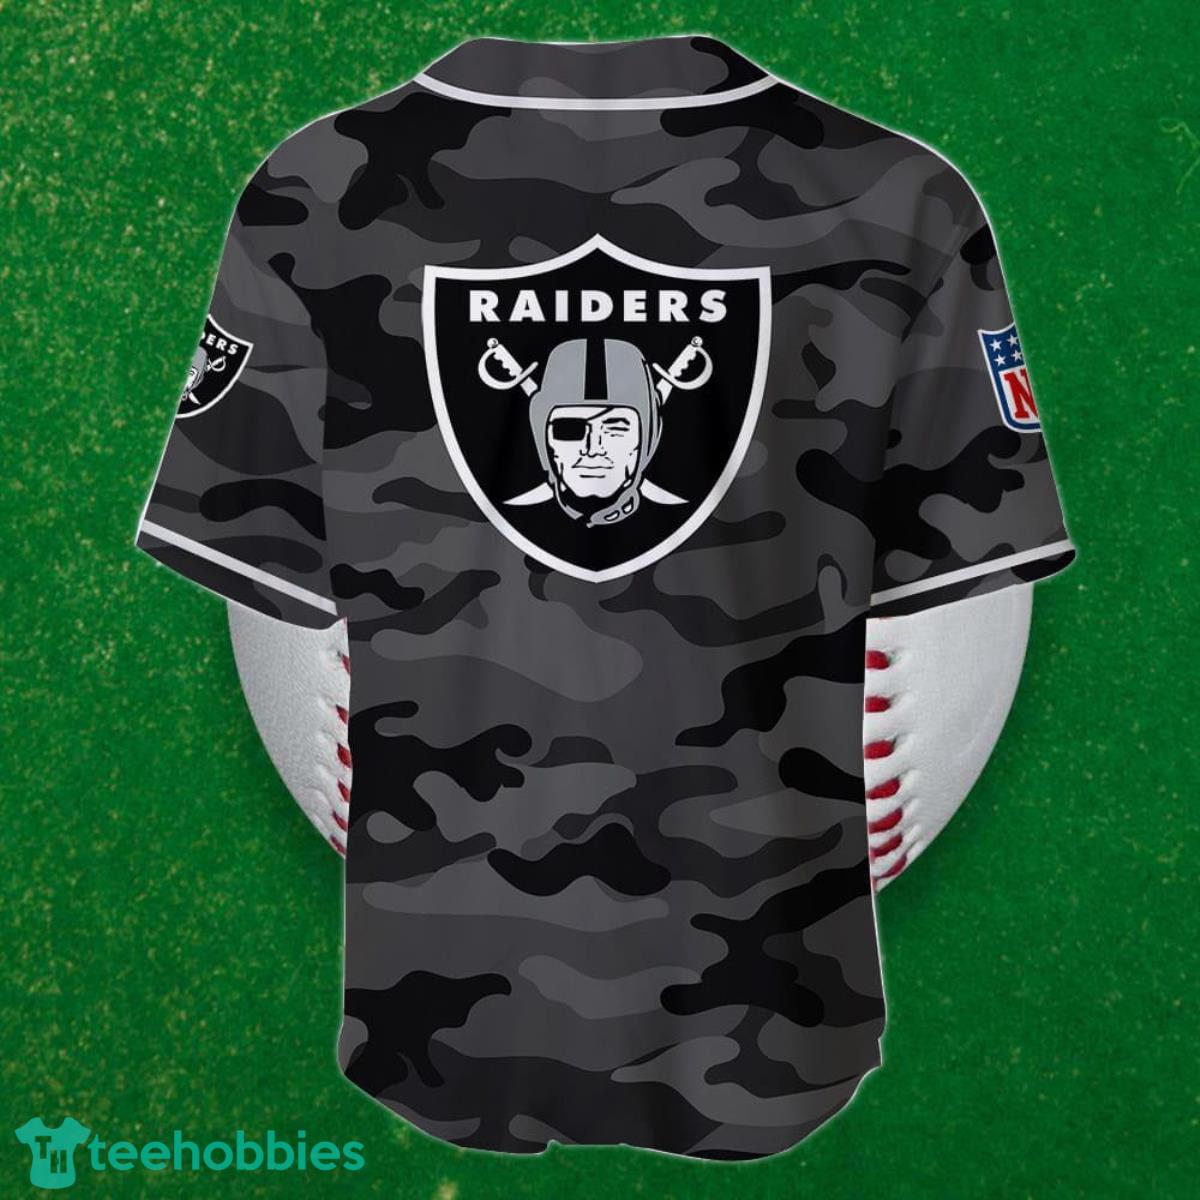 Oakland Raiders Jerseys & Teamwear, NFL Merchandise